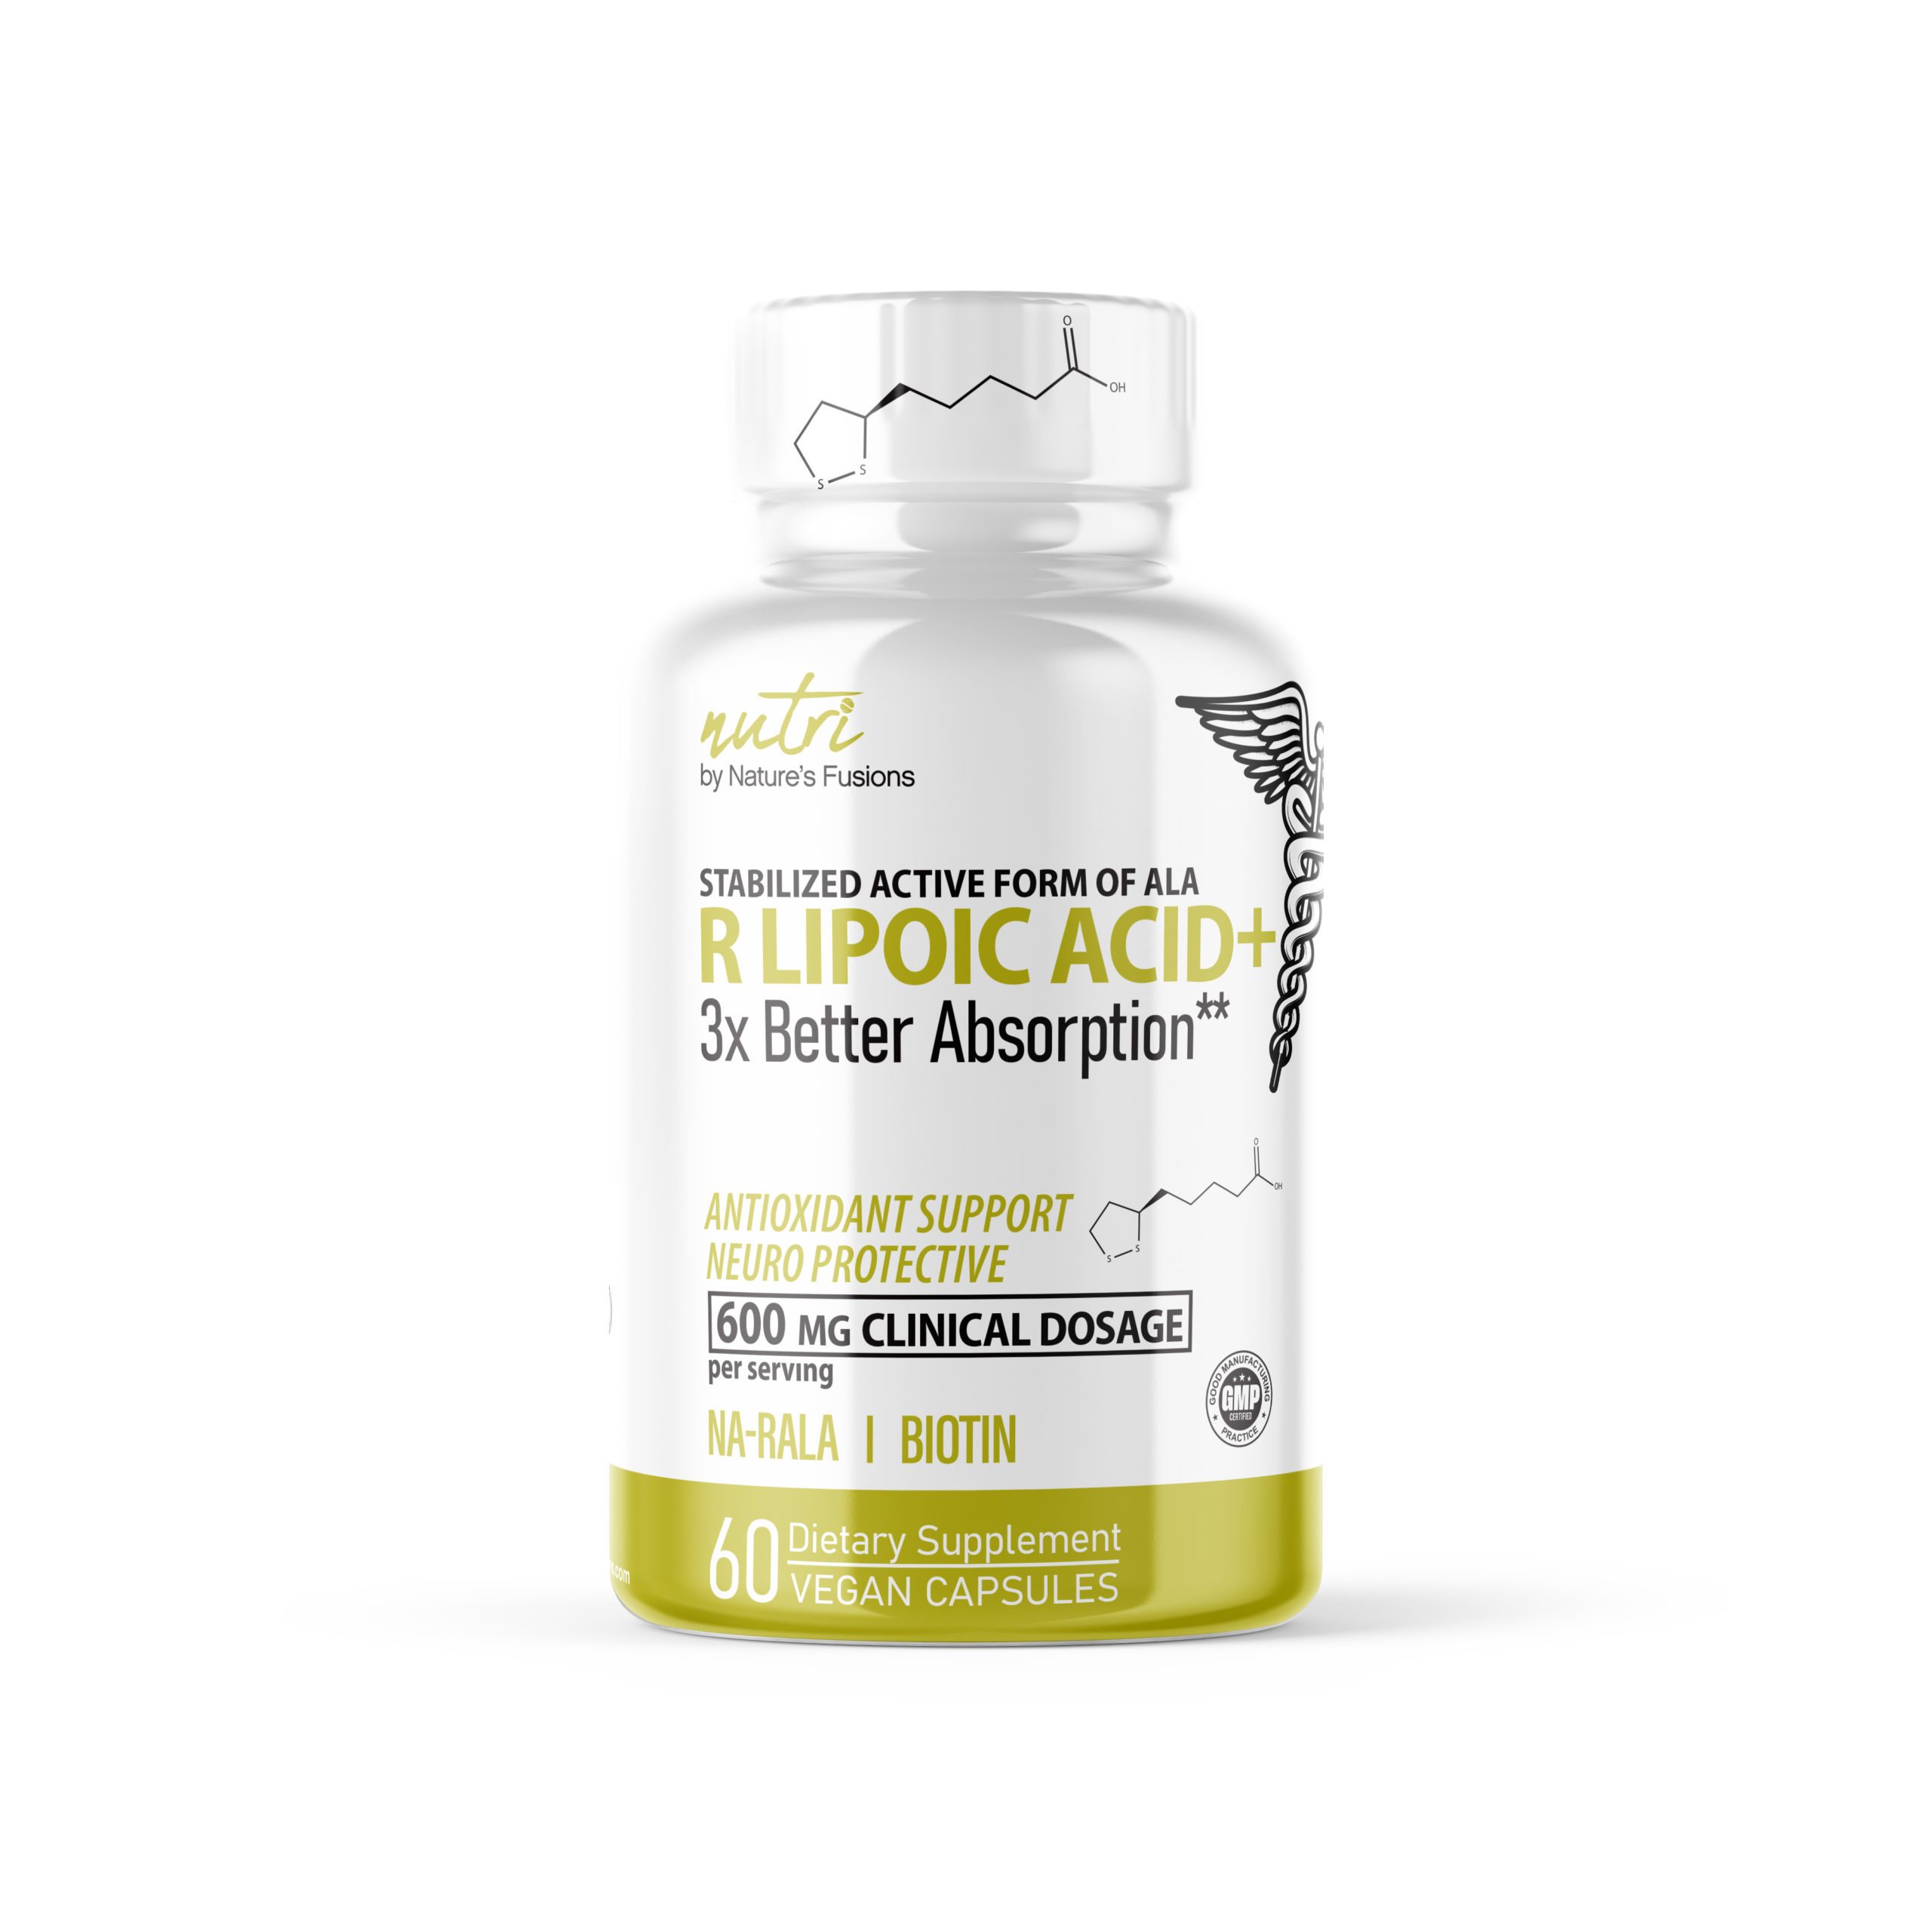 Nutri R Alpha Lipoic Acid 600mg Capsules with Biotin - 60 Vegan Capsules